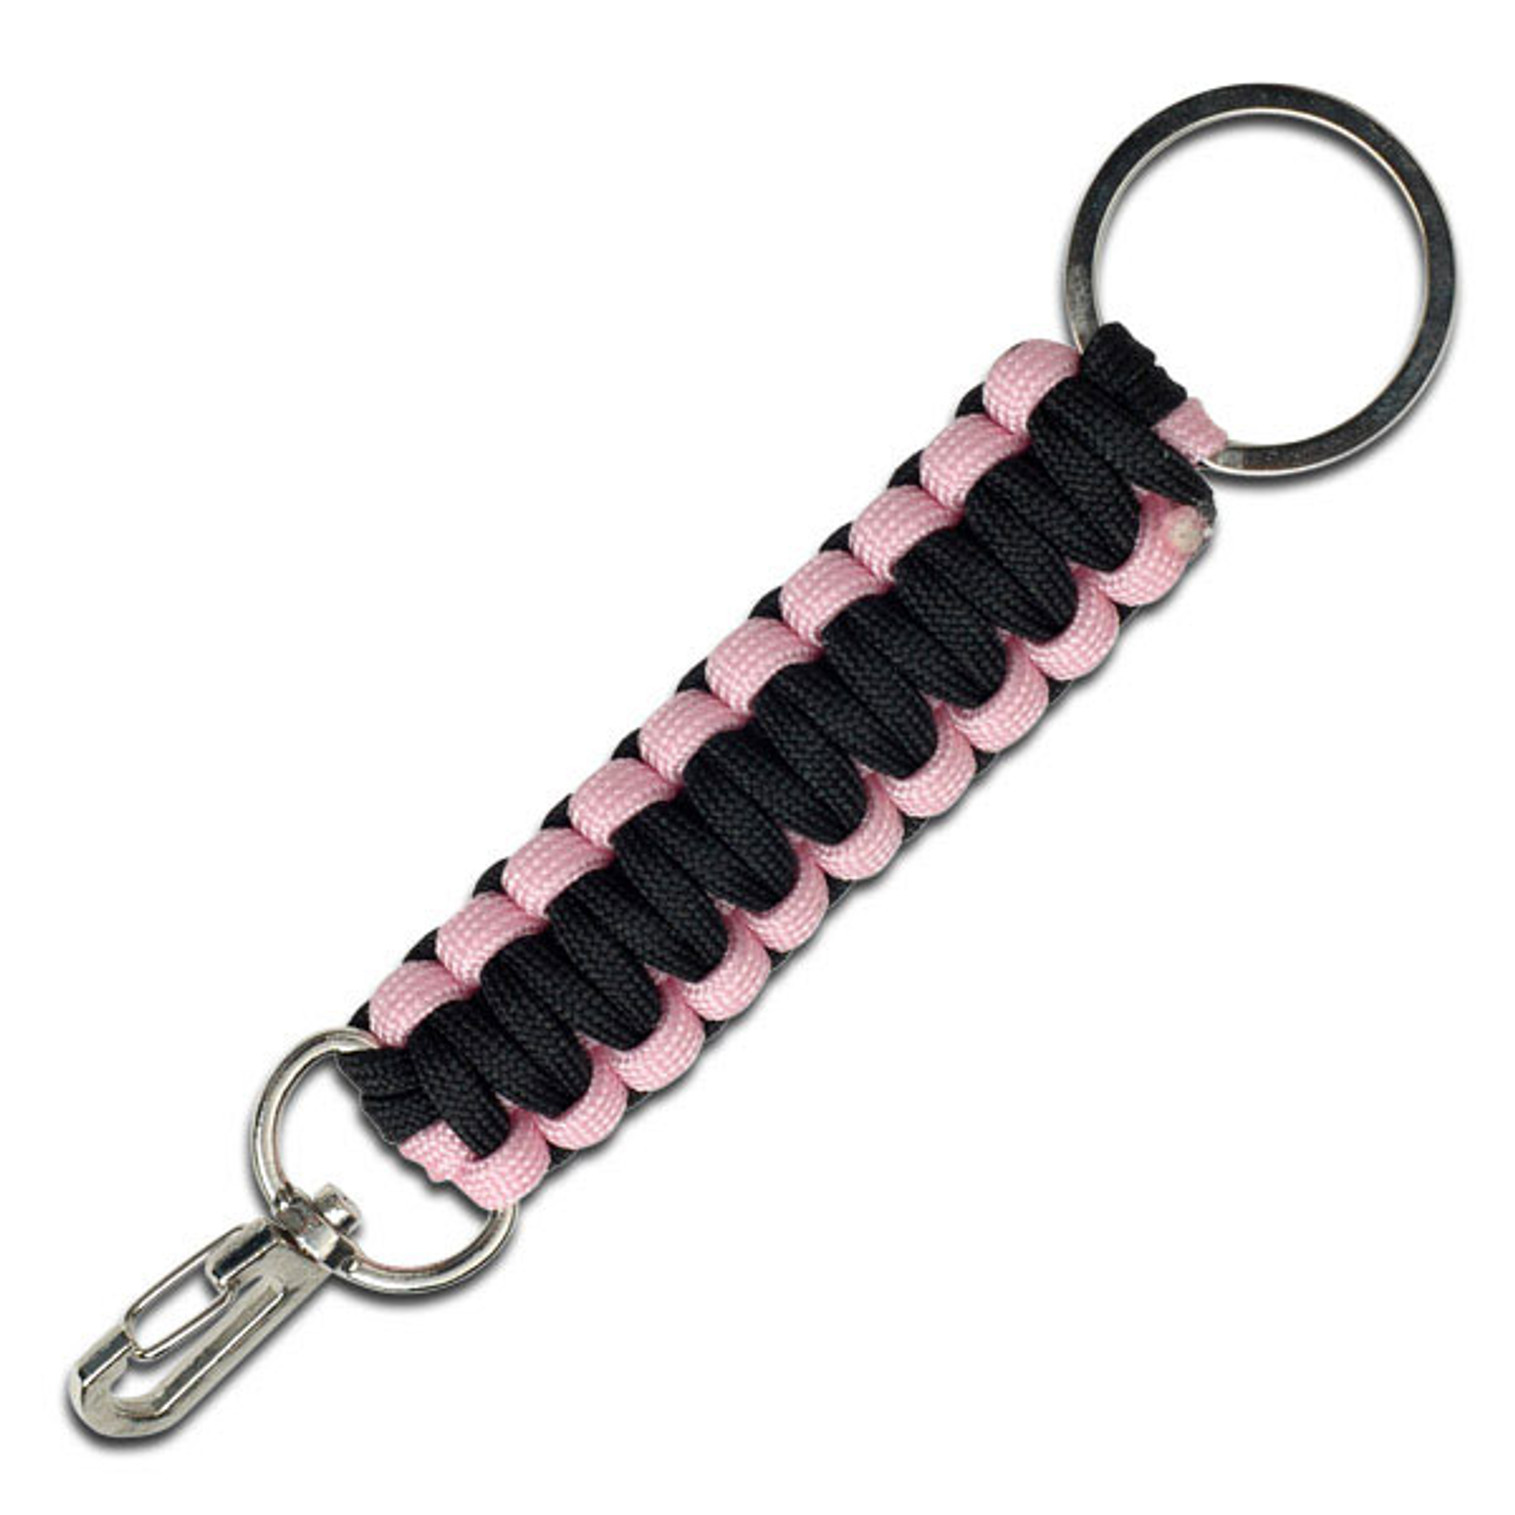 MTech Black & Pink Key Chain Lanyard